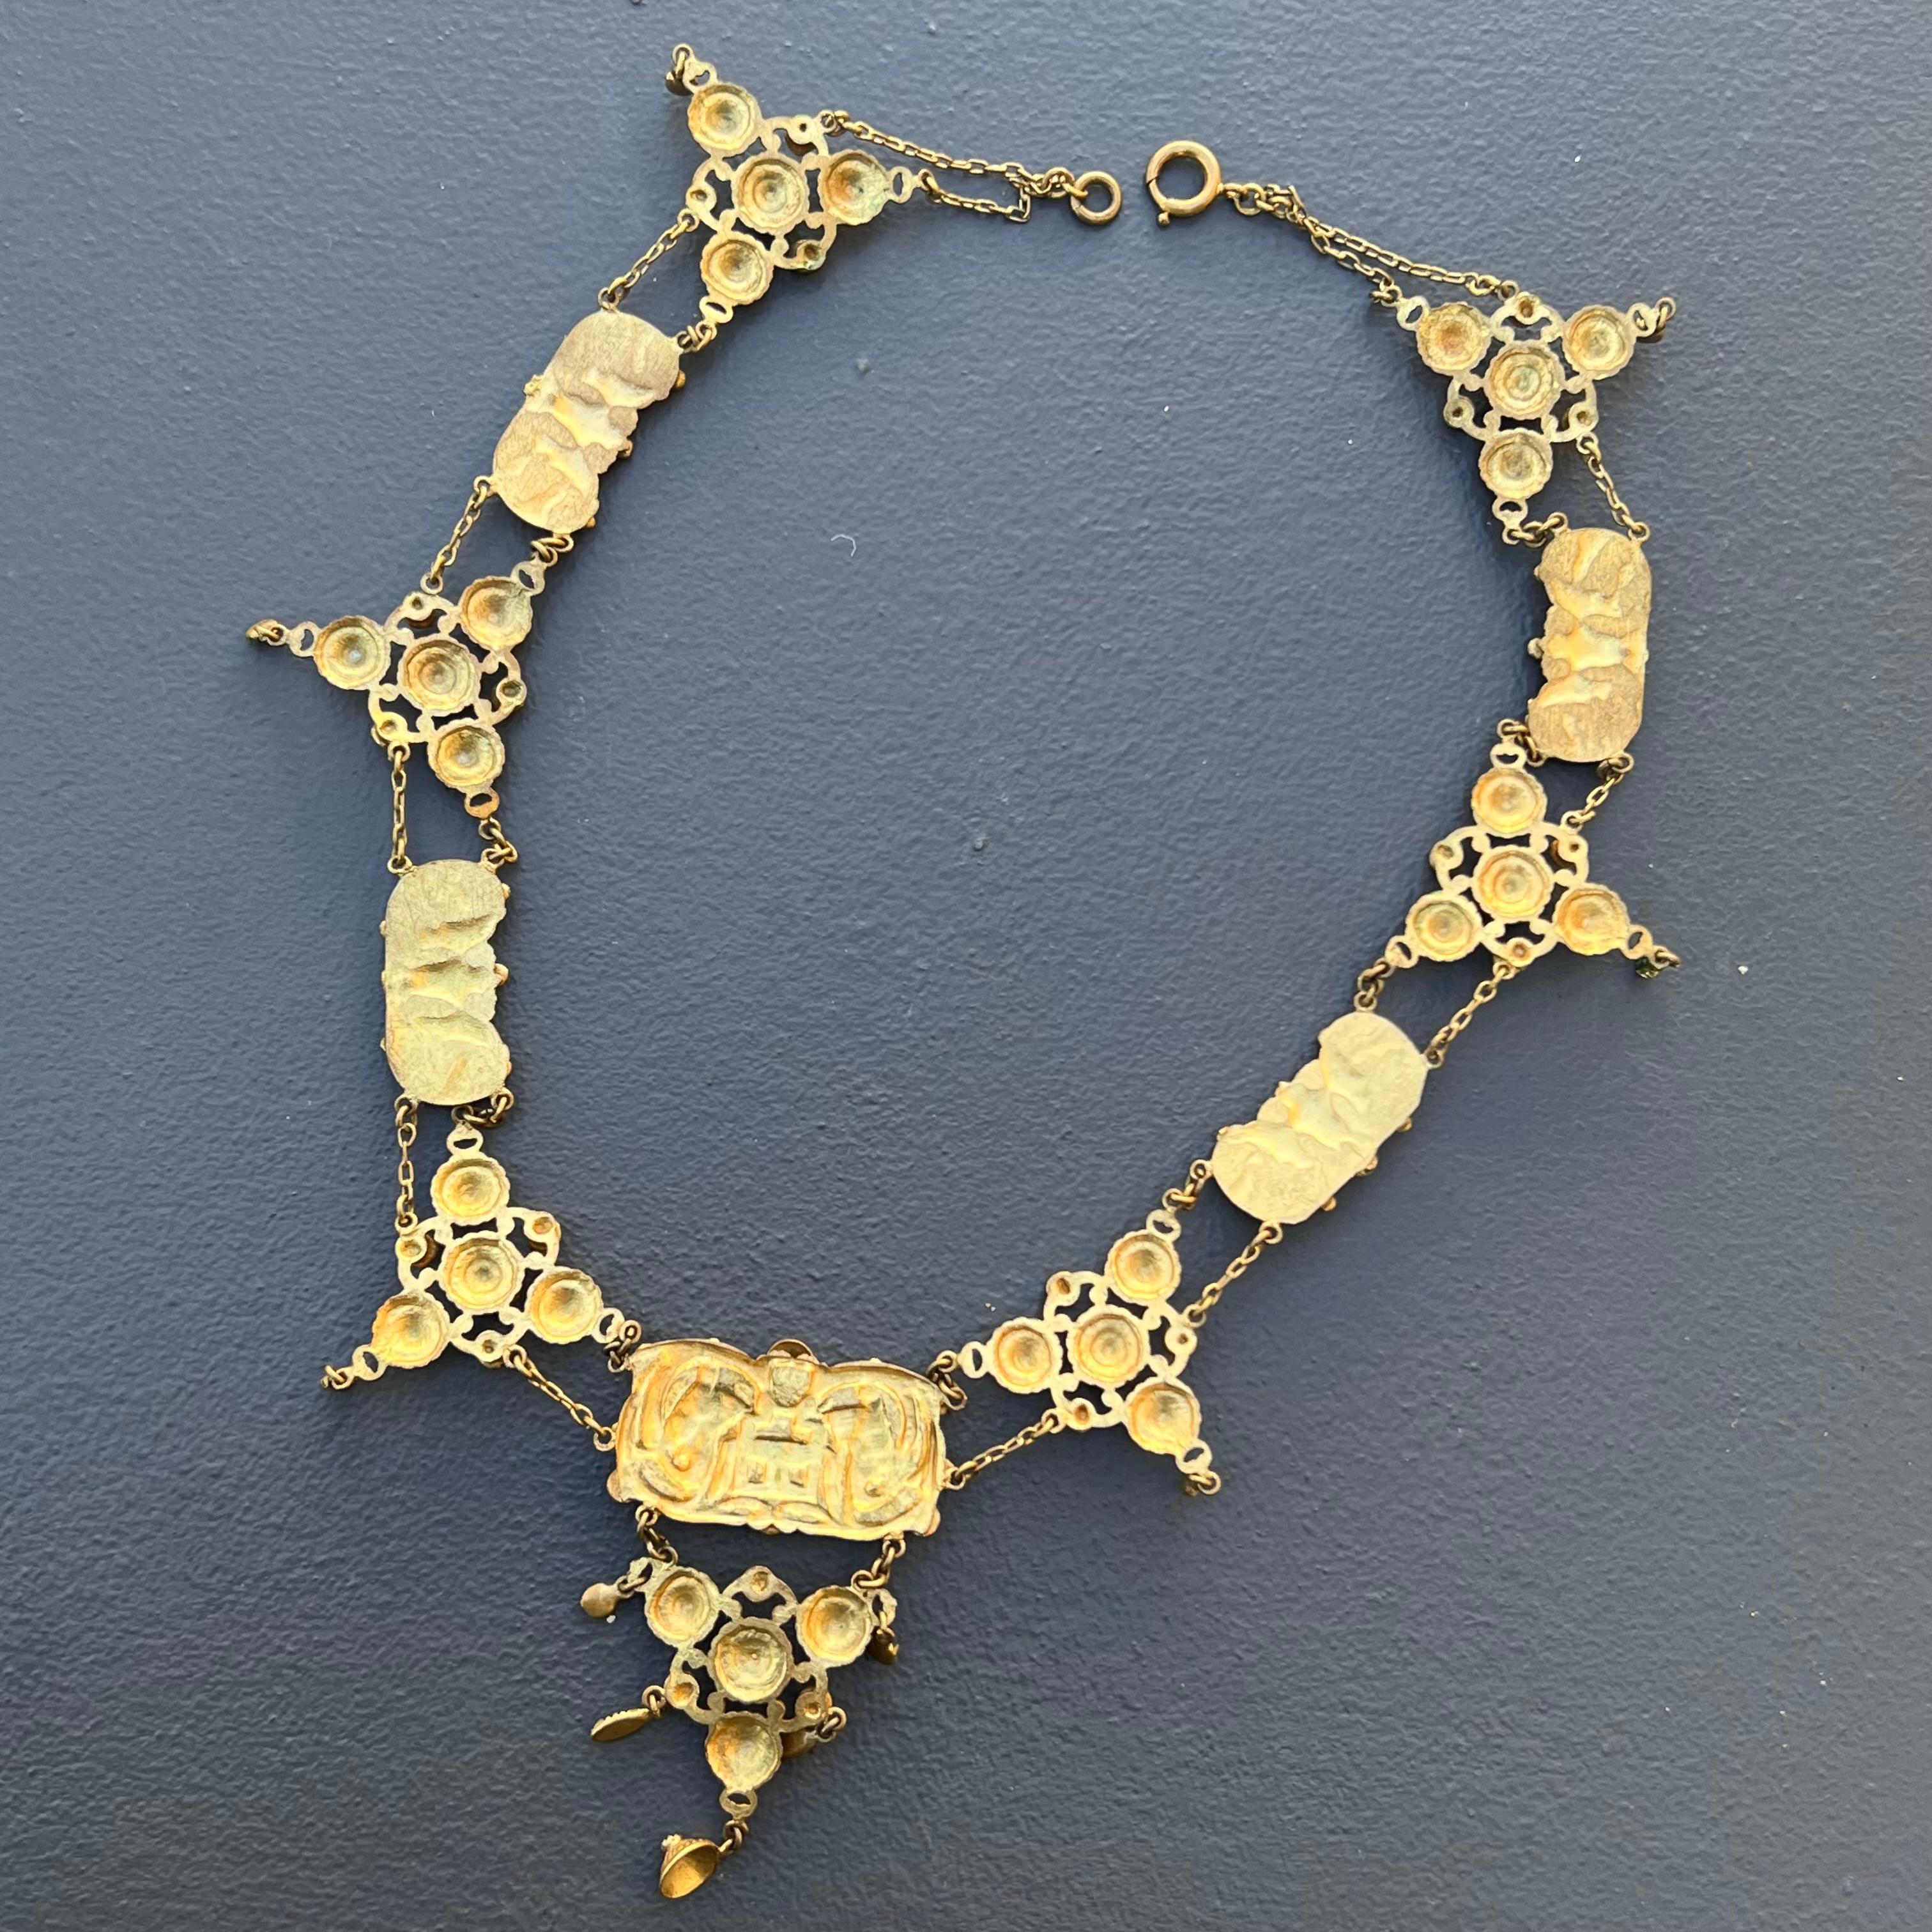 Antique Art Nouveau French Bresse Bressan Festoon Necklace For Sale 6